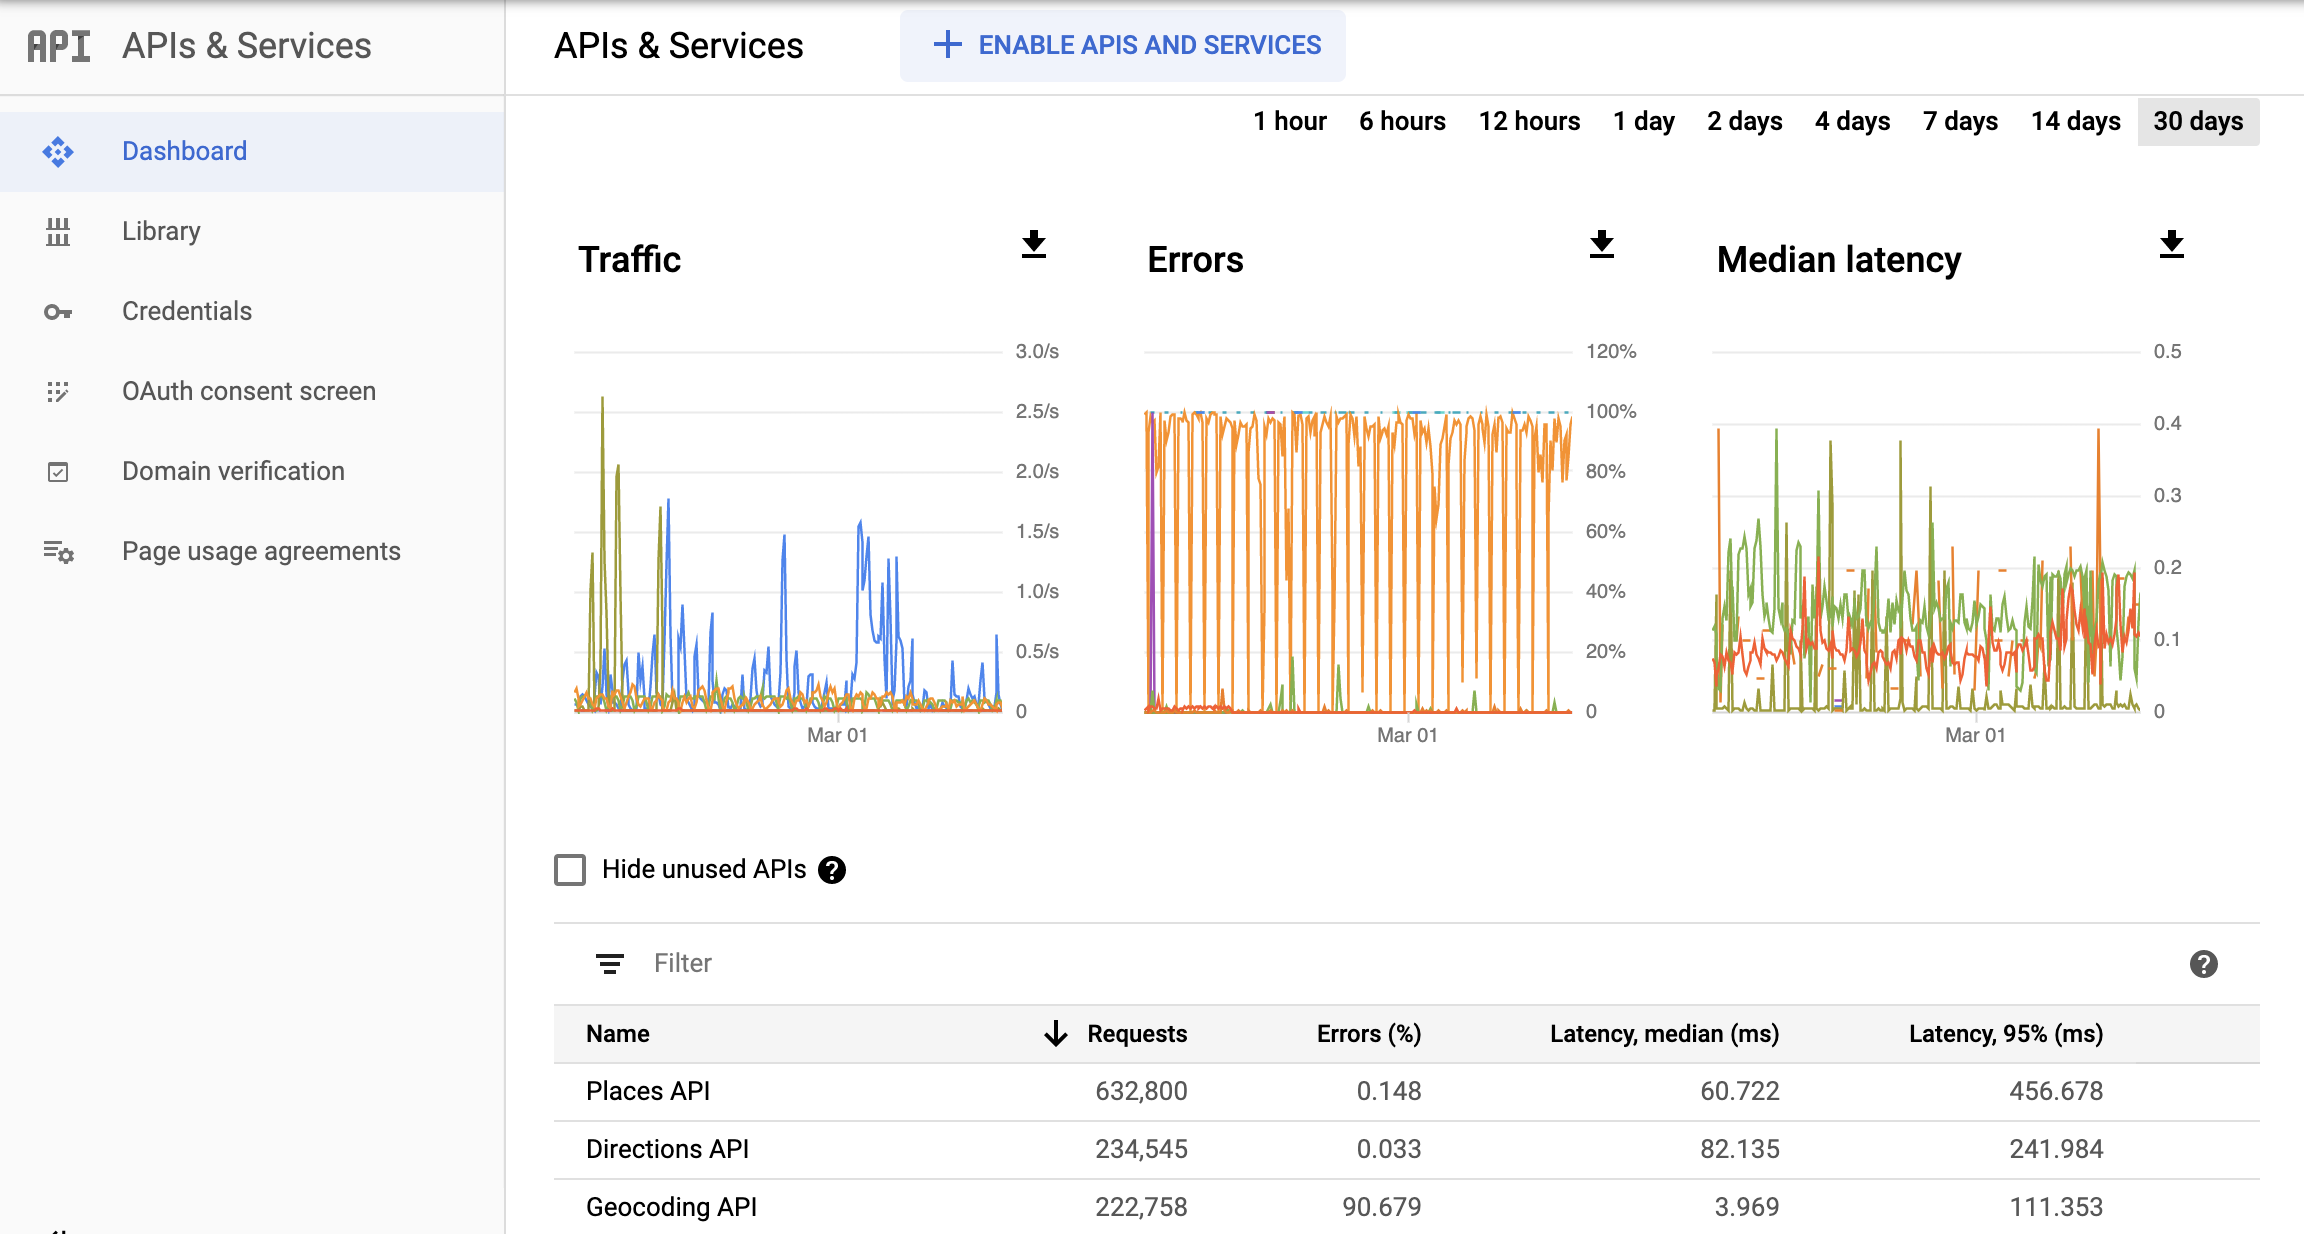 צילום מסך של הדף Monitoring APIs במסוף Google Cloud, שבו מוצג מרכז הבקרה לדיווח על ממשקי API ושירותים. הוא מציג תרשימים נפרדים עבור &#39;תנועה&#39;, &#39;שגיאות&#39; ו&#39;זמן אחזור חציוני&#39;. בתרשימים האלה
  יכולים להופיע נתונים משעה אחת עד 30 ימים.